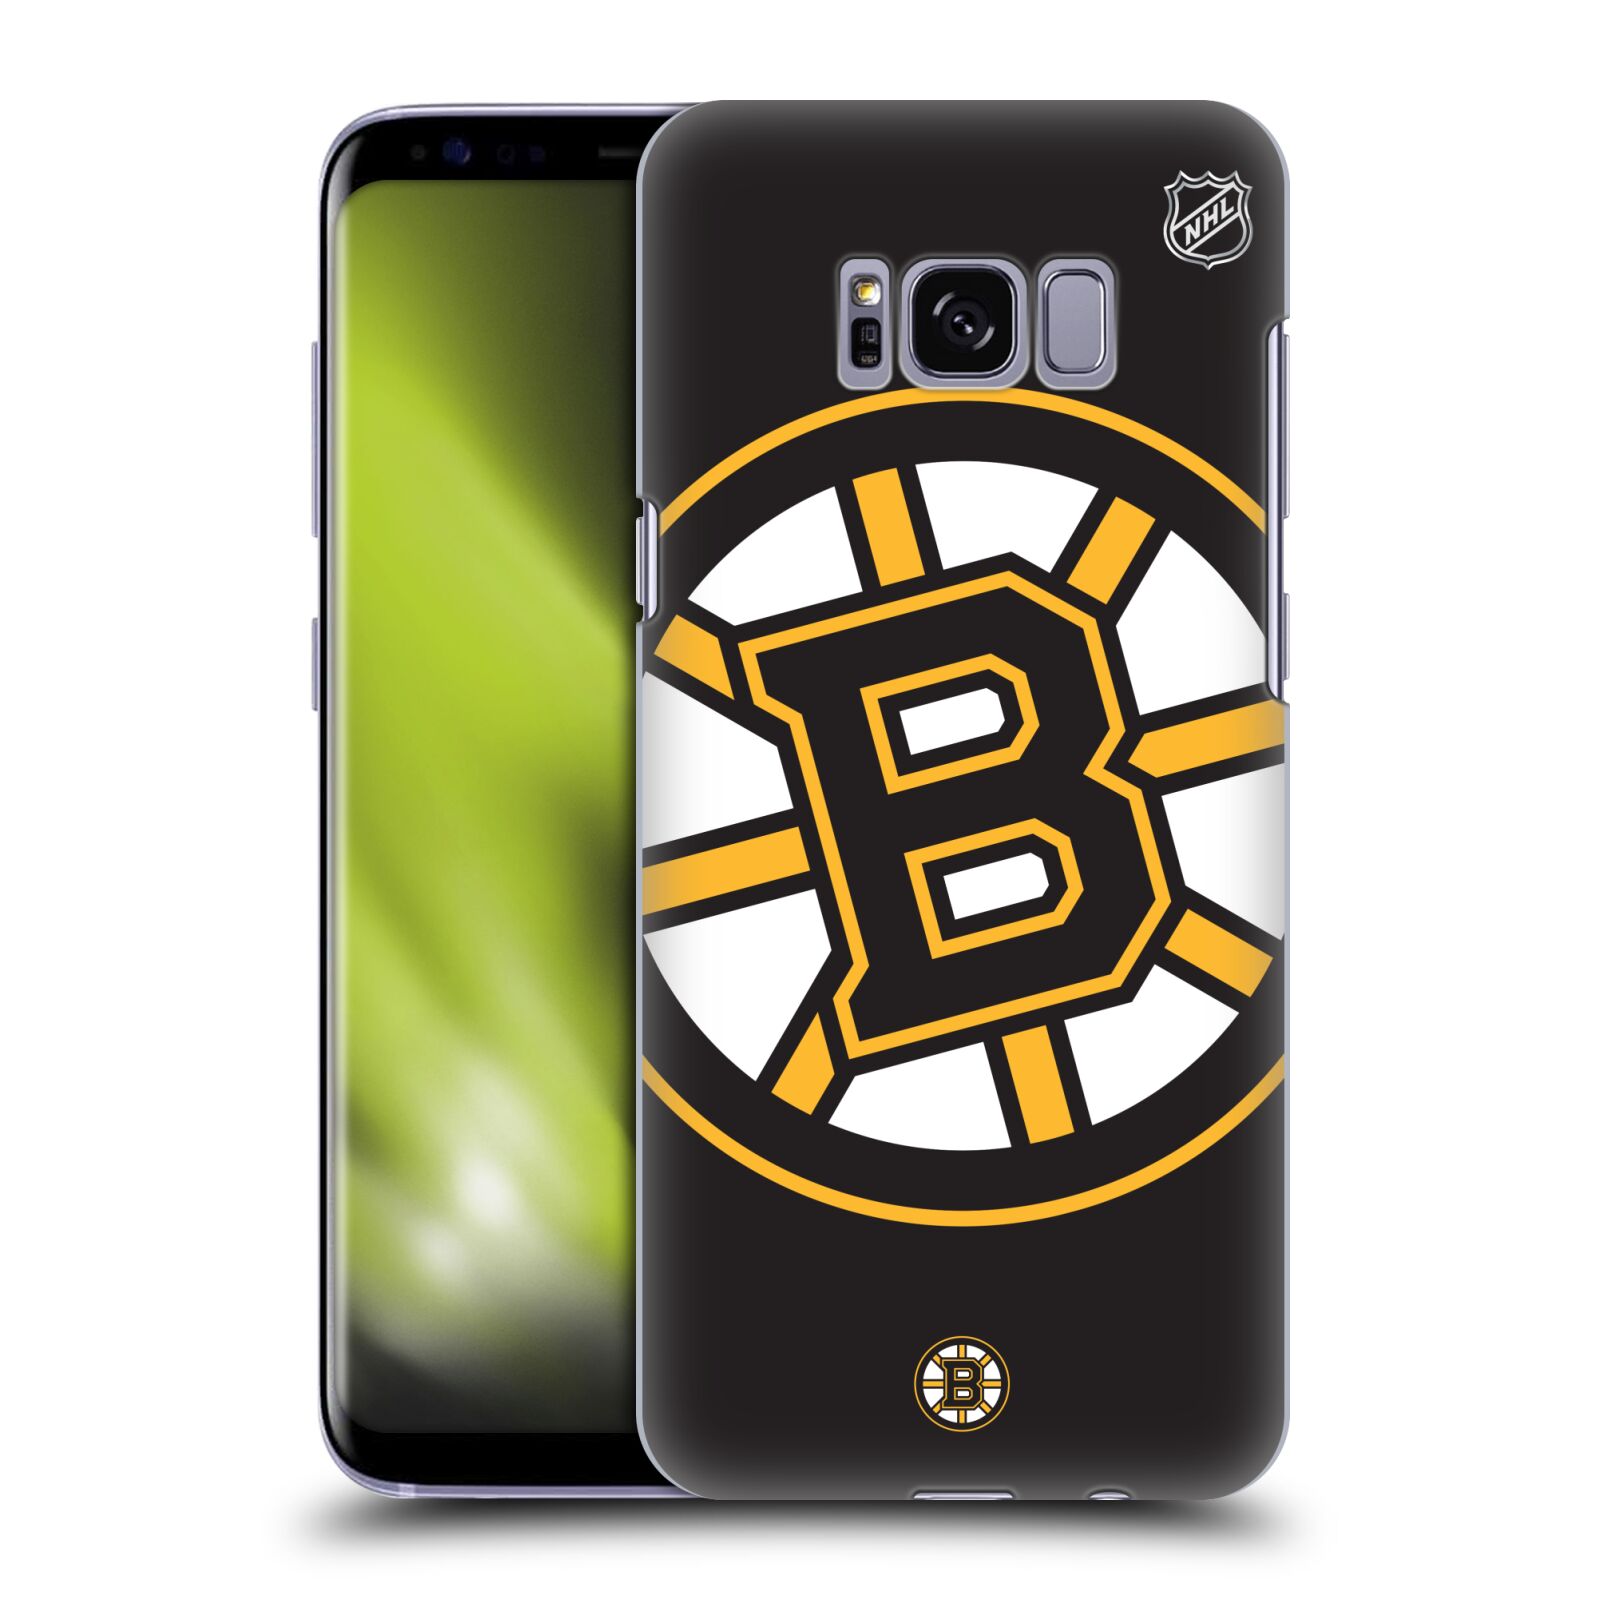 Pouzdro na mobil Samsung Galaxy S8 - HEAD CASE - Hokej NHL - Boston Bruins - velký znak